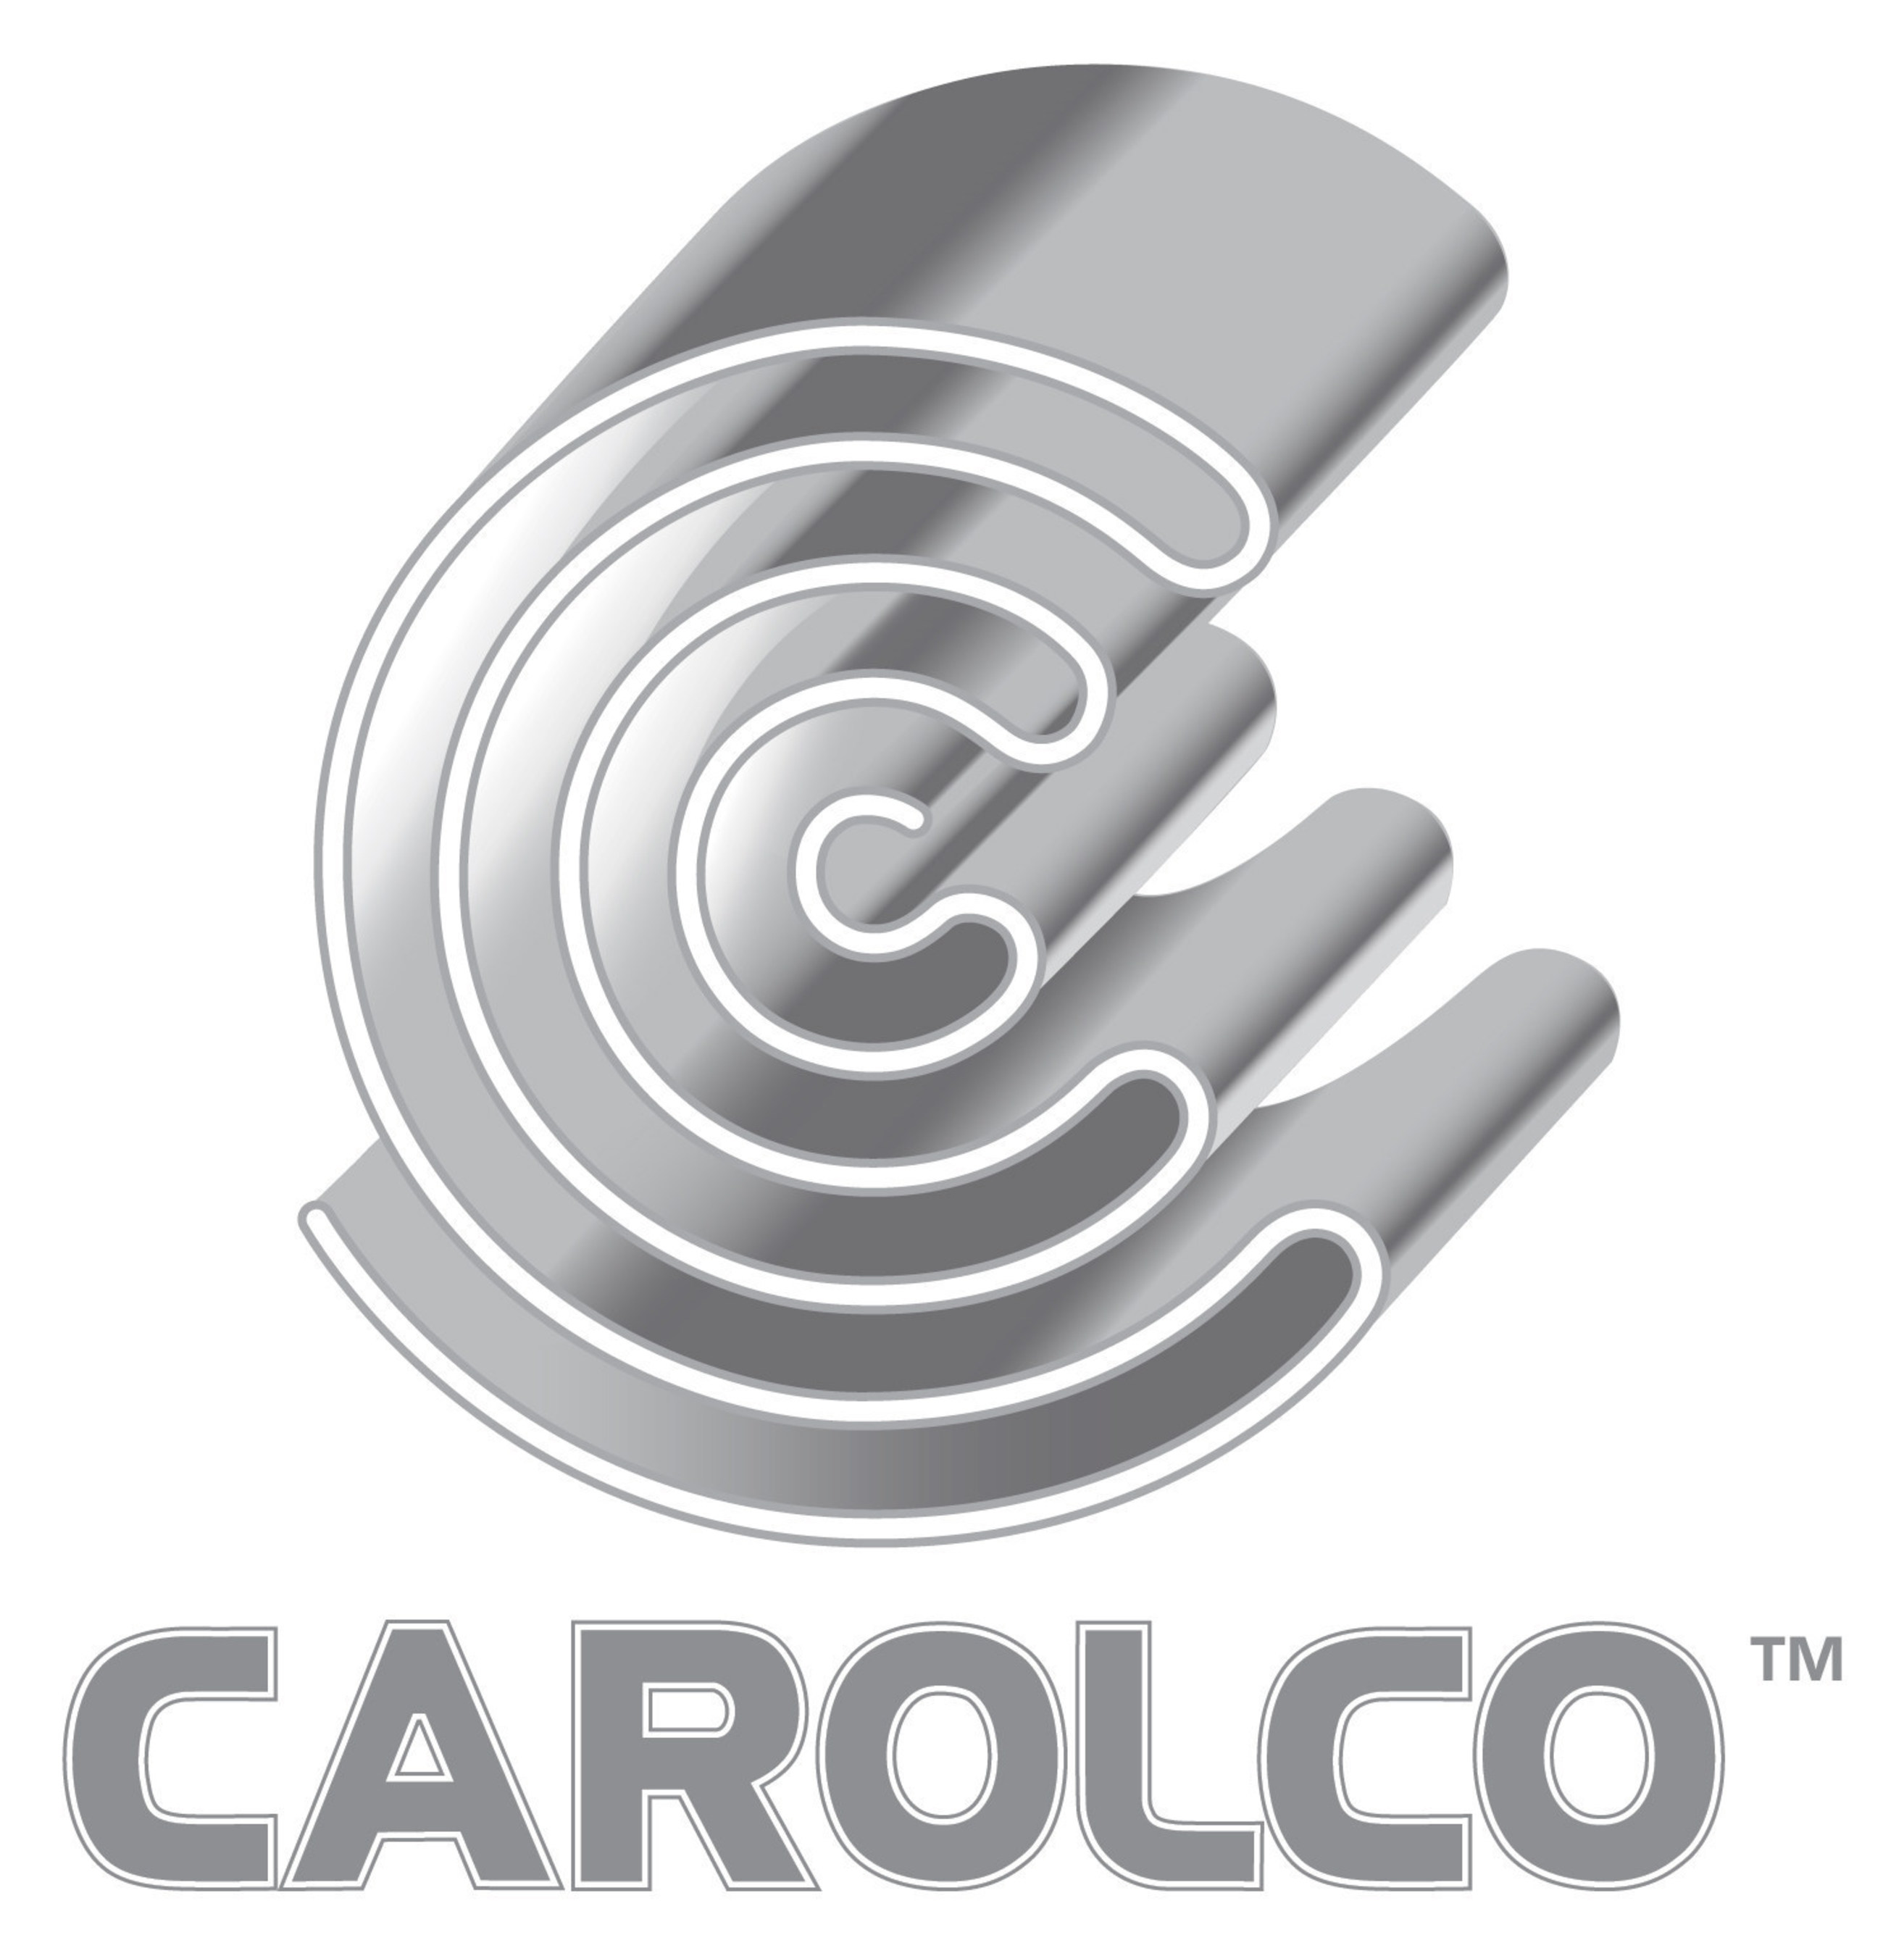 Carolco Pictures Logo